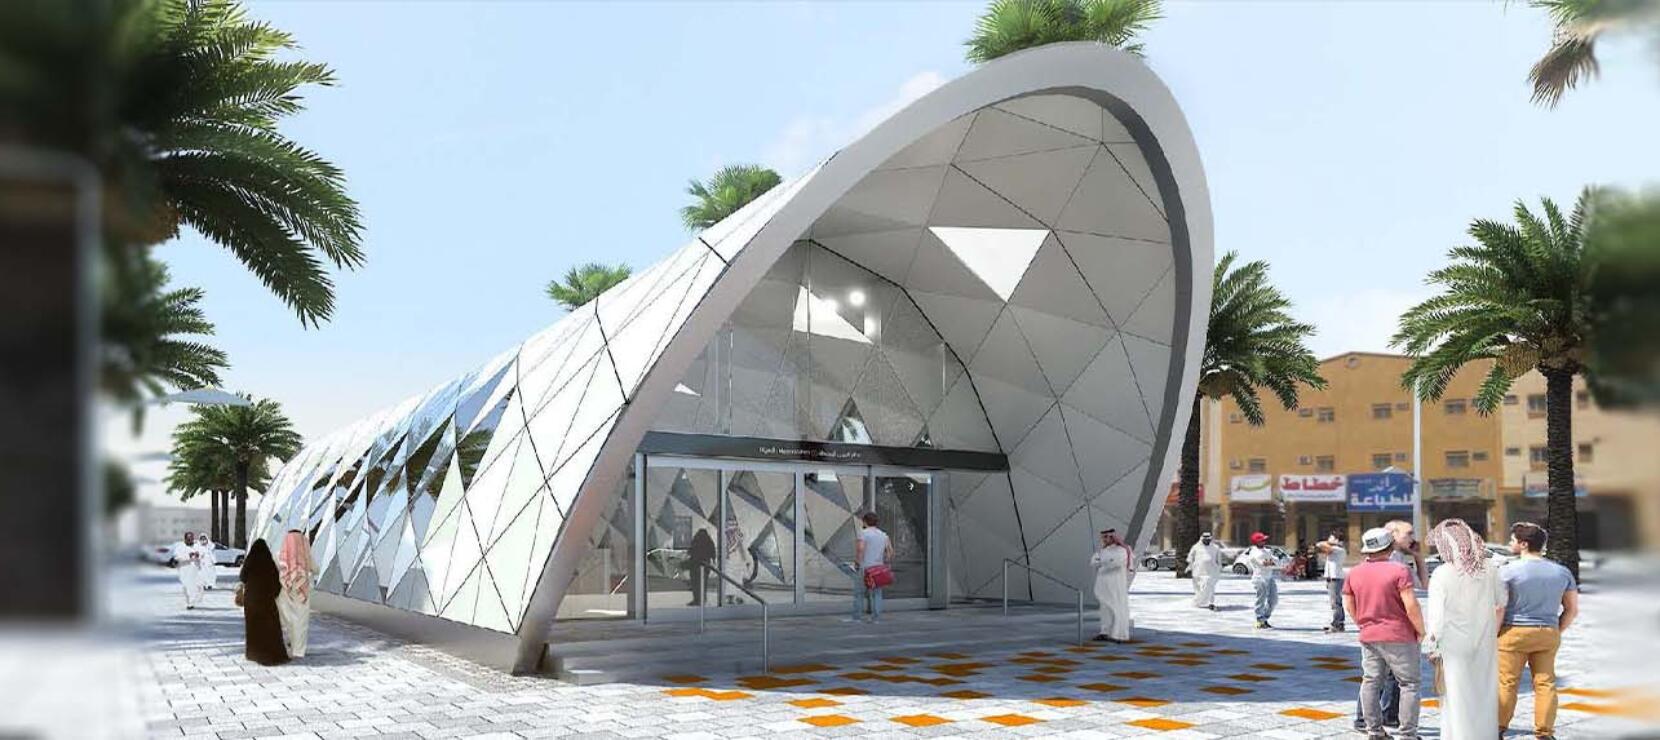 Nuevo Proyecto: Estación de Metro en Riad (Arabia Saudita)